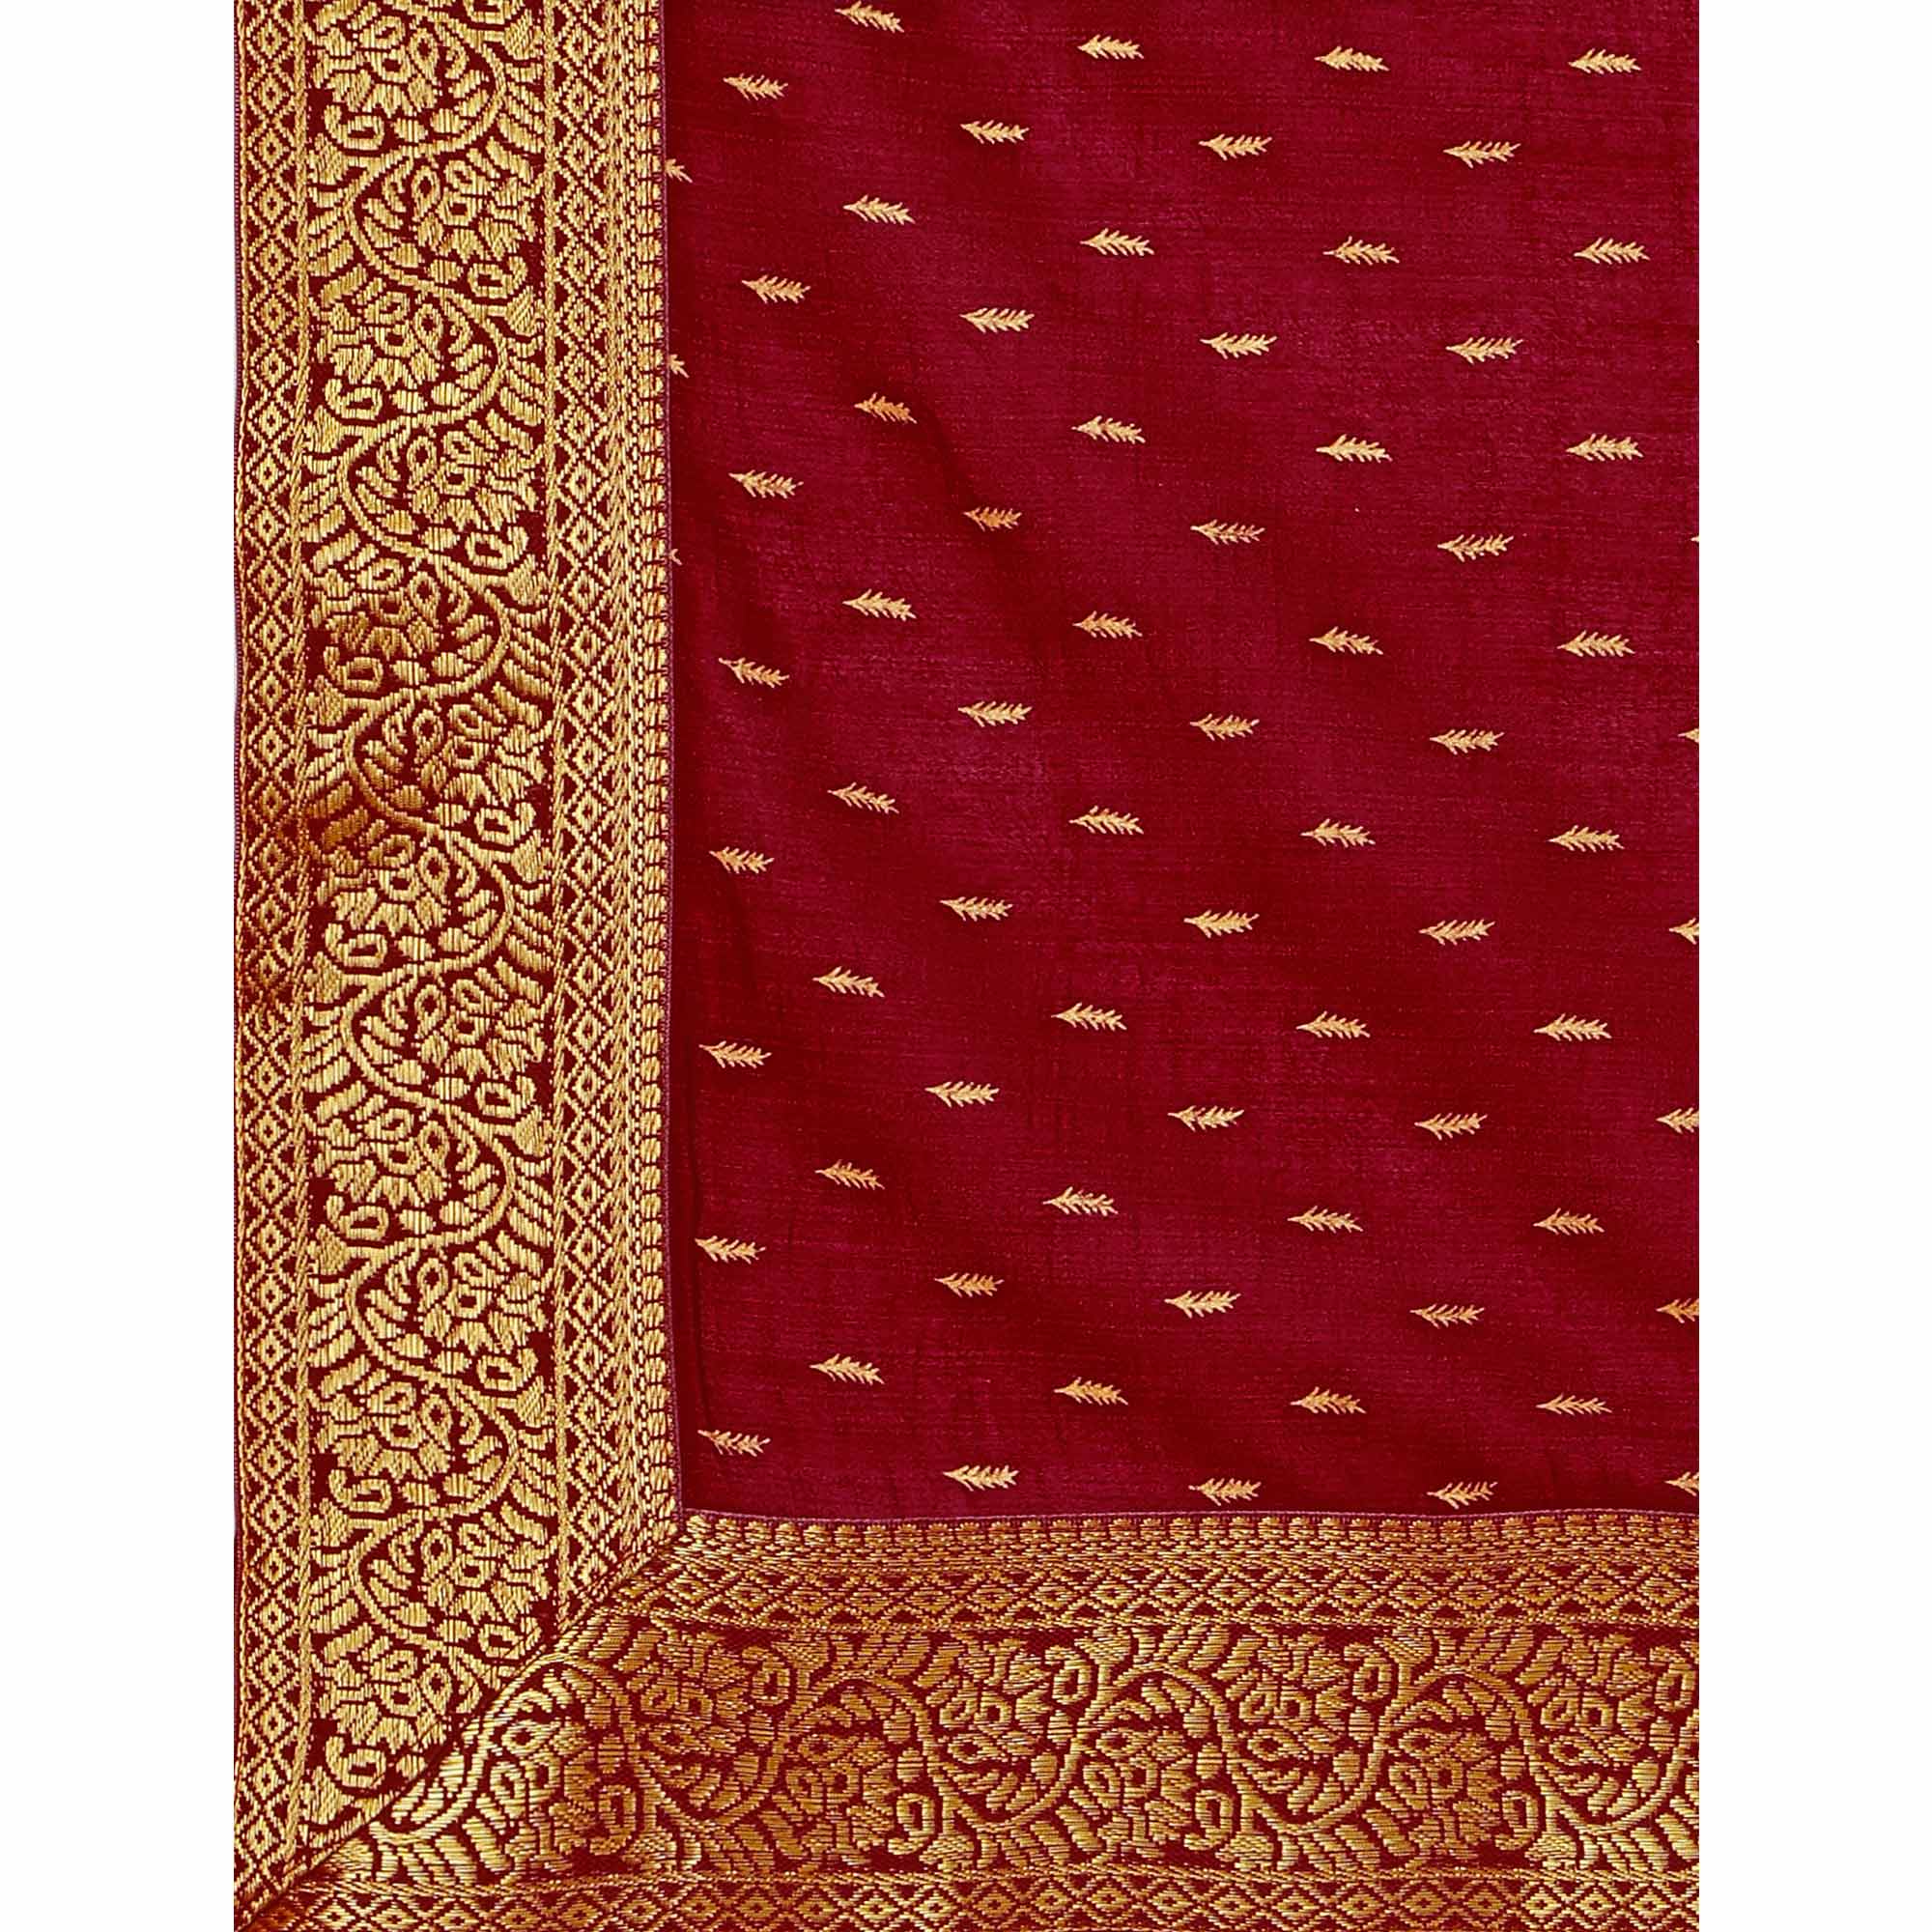 Maroon Foil Printed Vichitra Silk Saree With Jacquard Border